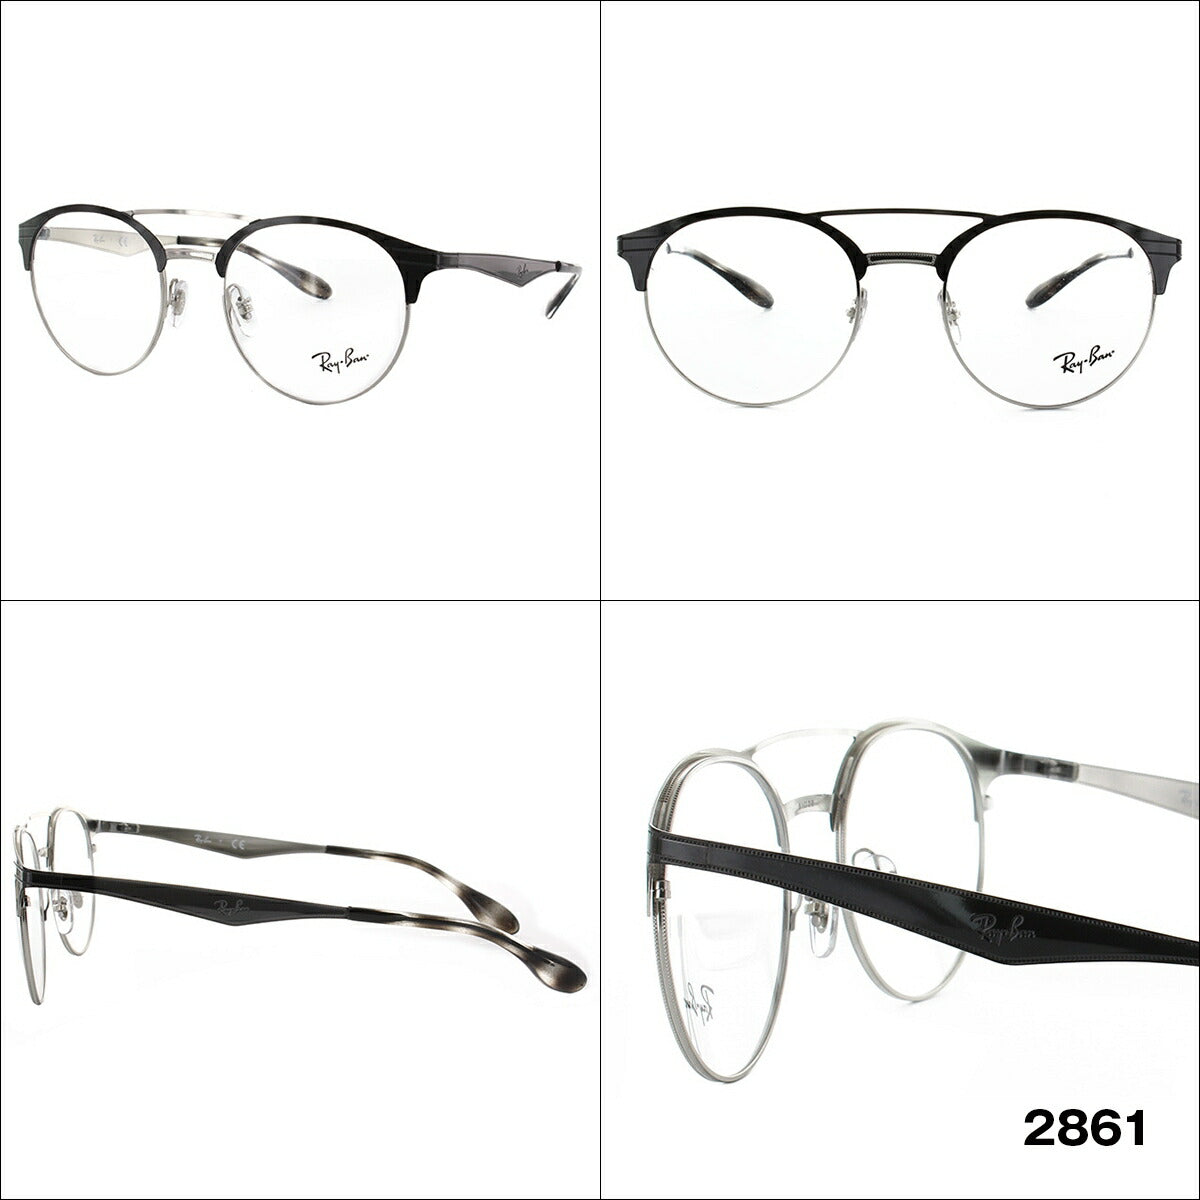 レイバン メガネ フレーム RX3545V 2861・2904・2911・2912・2917 51 ボストン型 メンズ レディース 眼鏡 度付き 度なし 伊達メガネ ブランドメガネ 紫外線 ブルーライトカット 老眼鏡 花粉対策 Ray-Ban